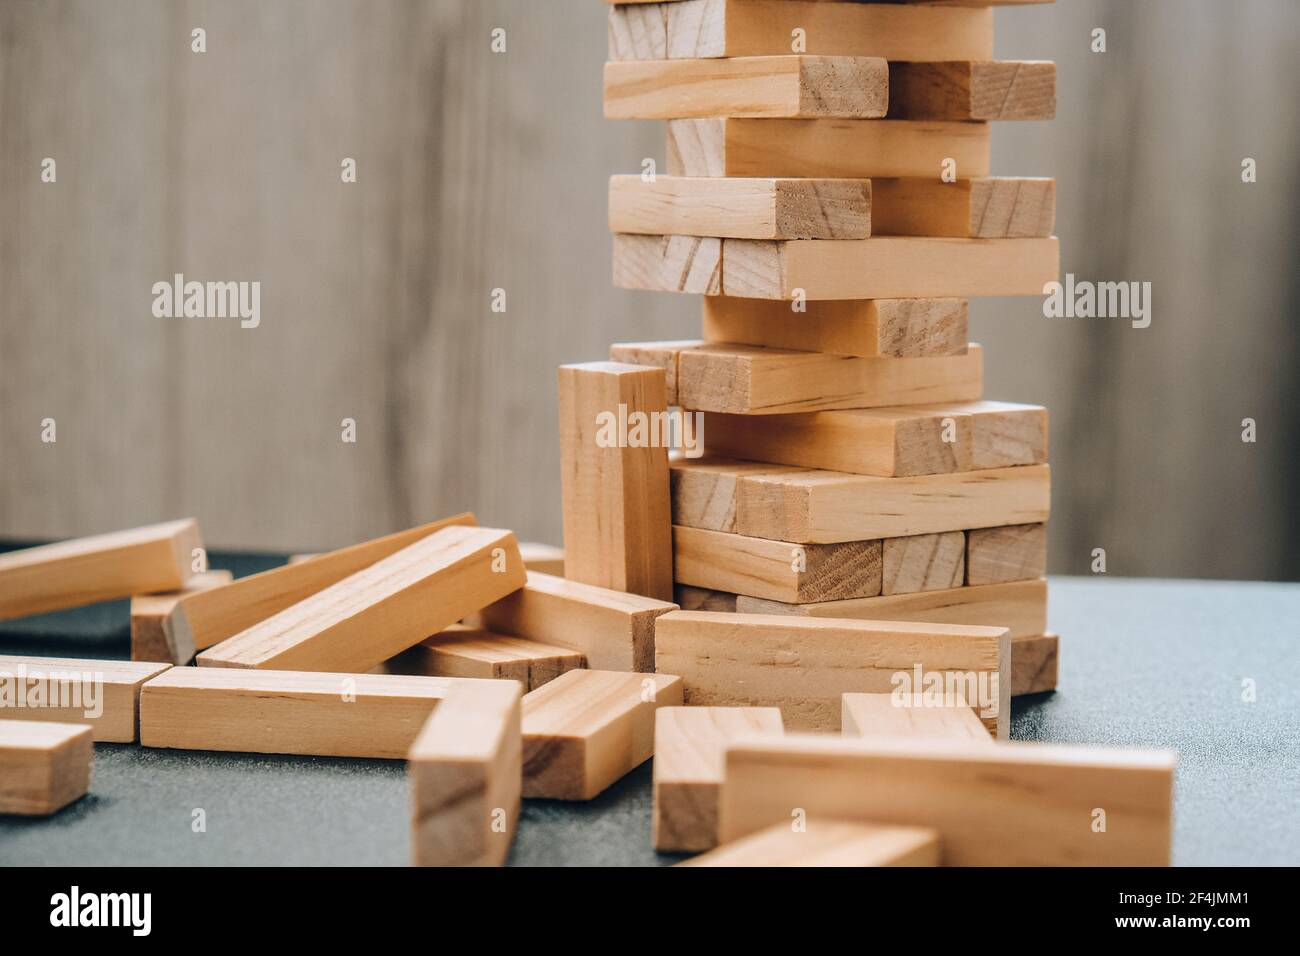 Xếp gỗ là một trò chơi mang tính giải trí cũng như hình thành kỹ năng tư duy logic và khả năng tập trung. Trò chơi này sẽ giúp bạn rèn luyện khả năng tư duy bằng cách tạo ra những hình khối phức tạp từ những khối đơn giản. Hãy xem hình ảnh liên quan để tìm hiểu thêm về trò chơi xếp gỗ này.